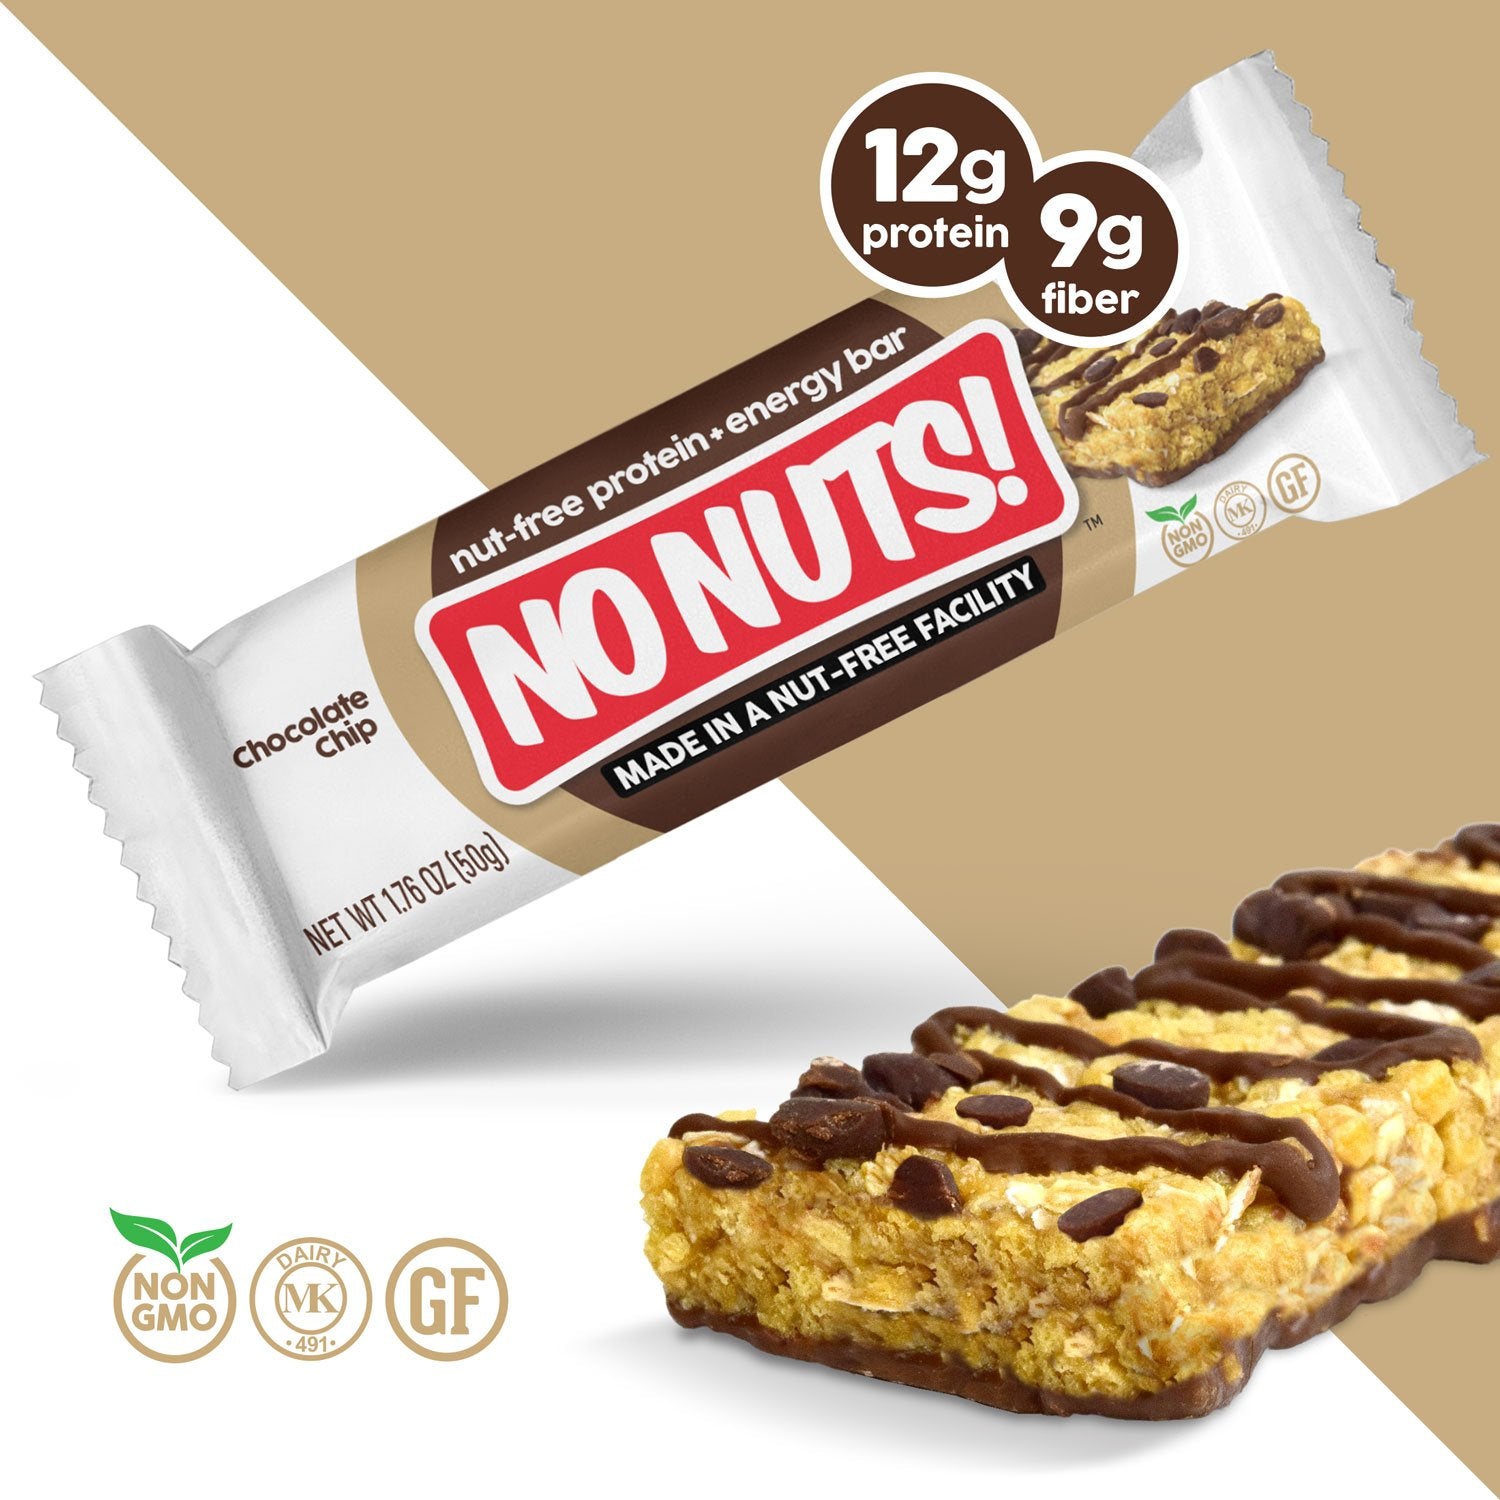 Nut-free energy bars